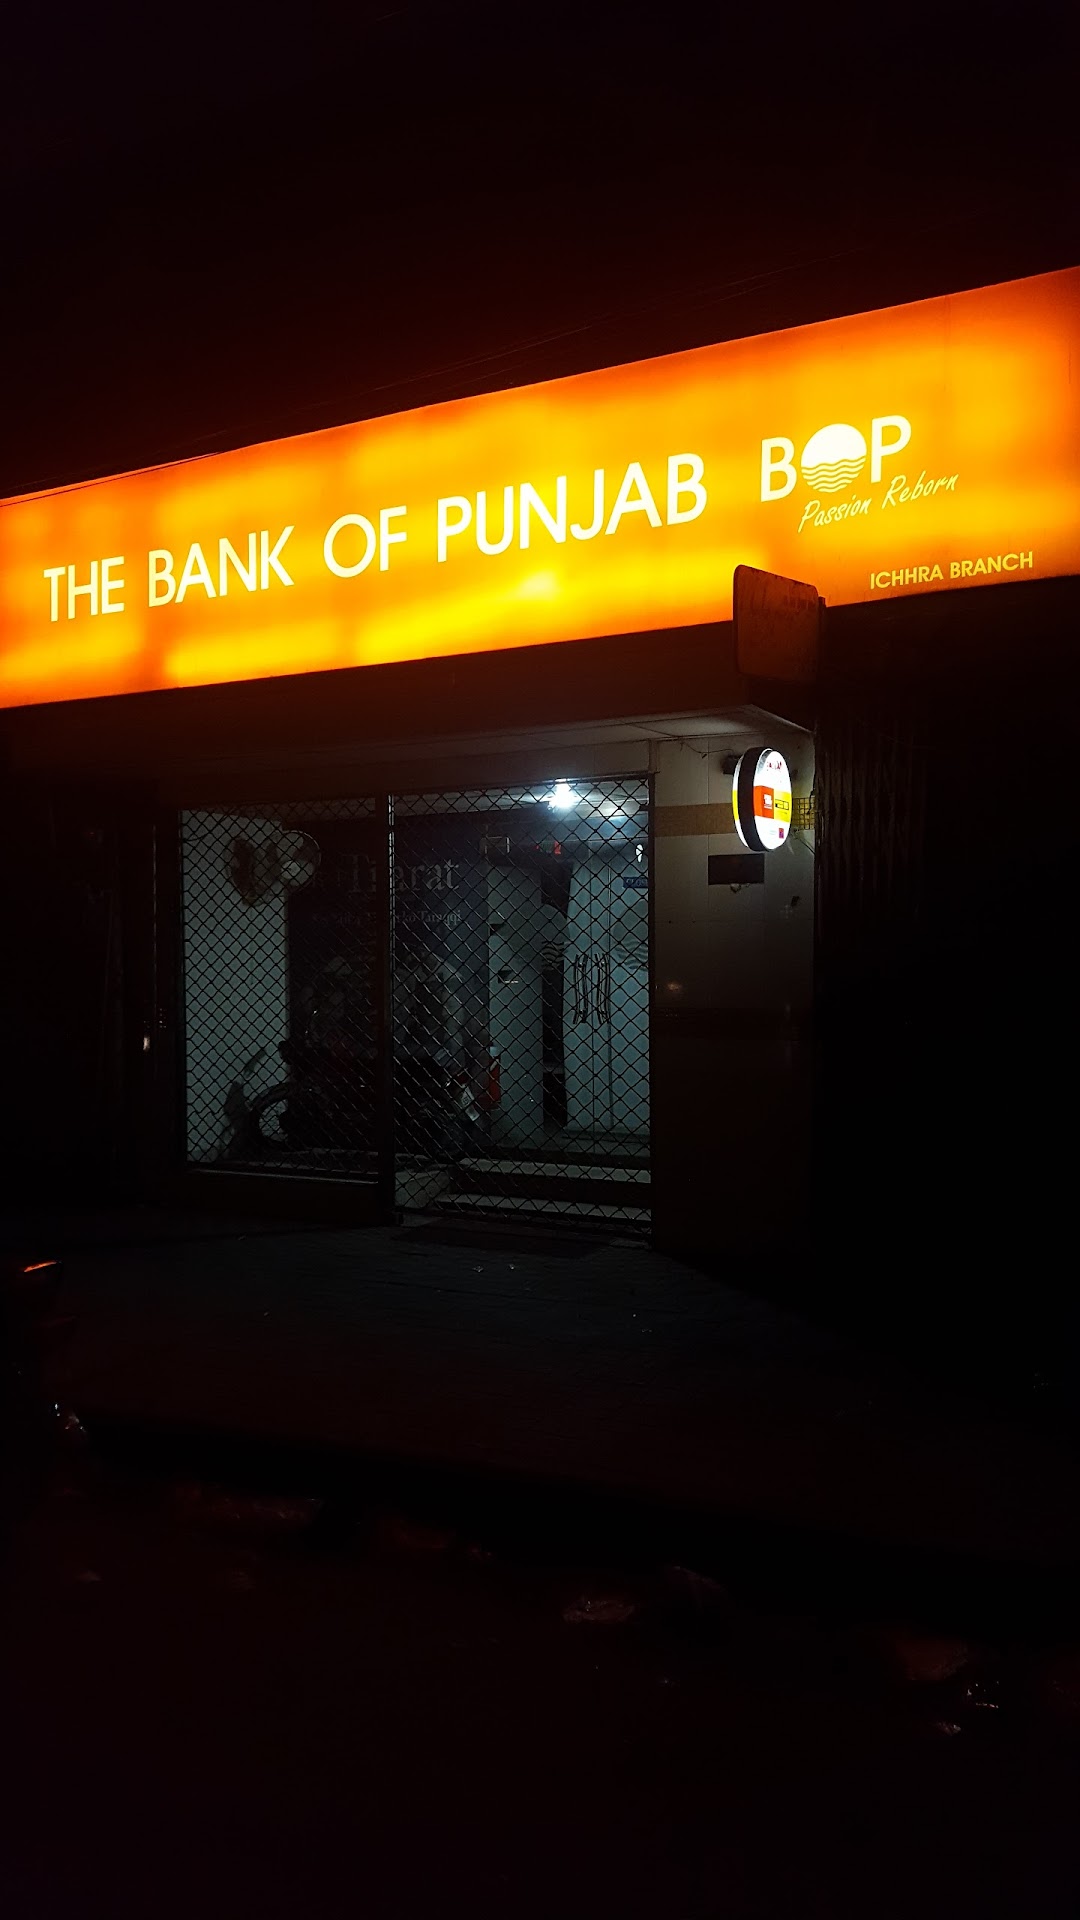 Bank Of Punjab